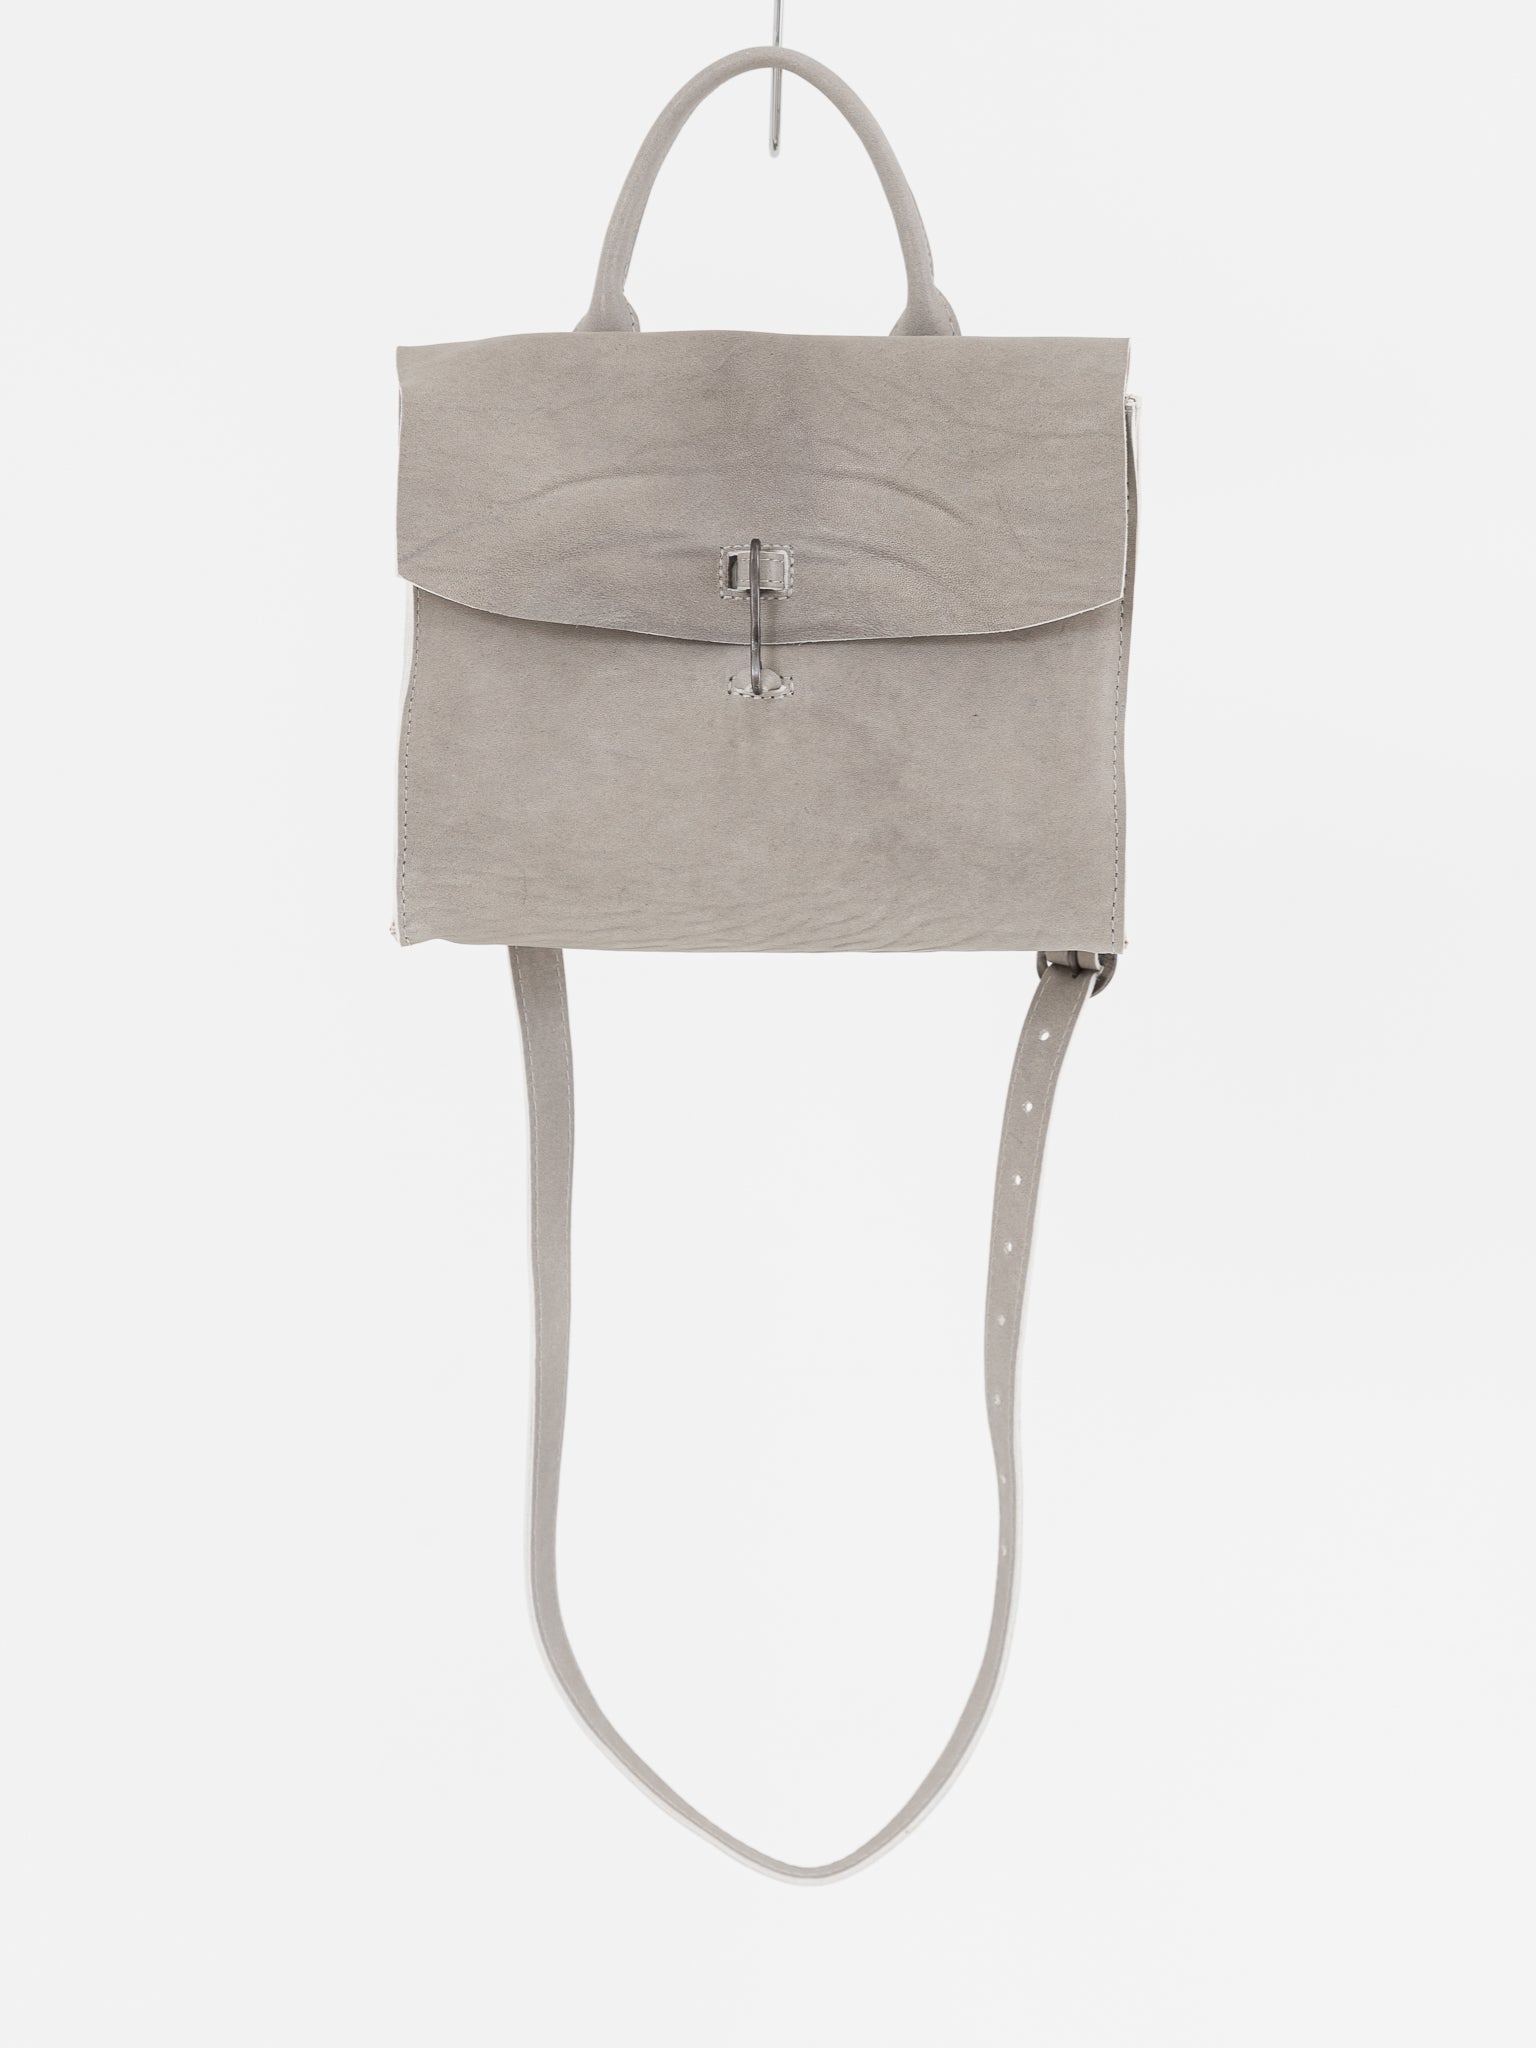 Tagliovivo Small Doctor Bag, Light Grey - Worthwhile, Inc.